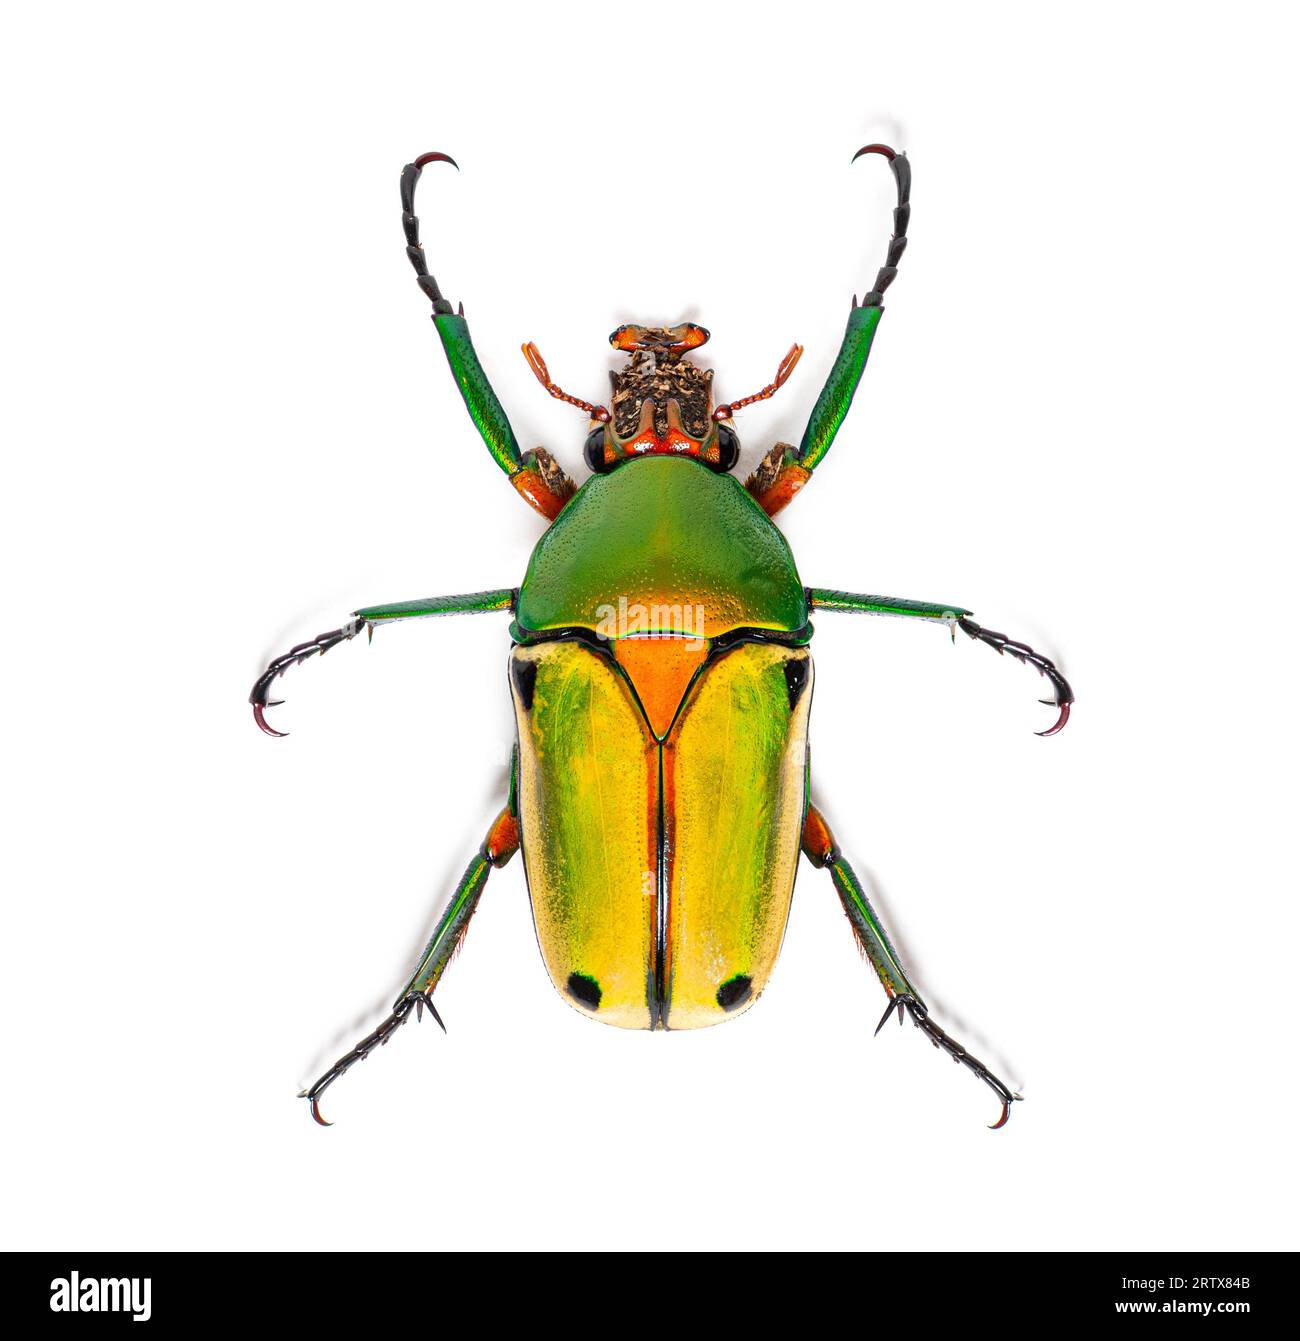 Flower beetle, Chlorocala quadrimaculata, isolated on white Stock Photo